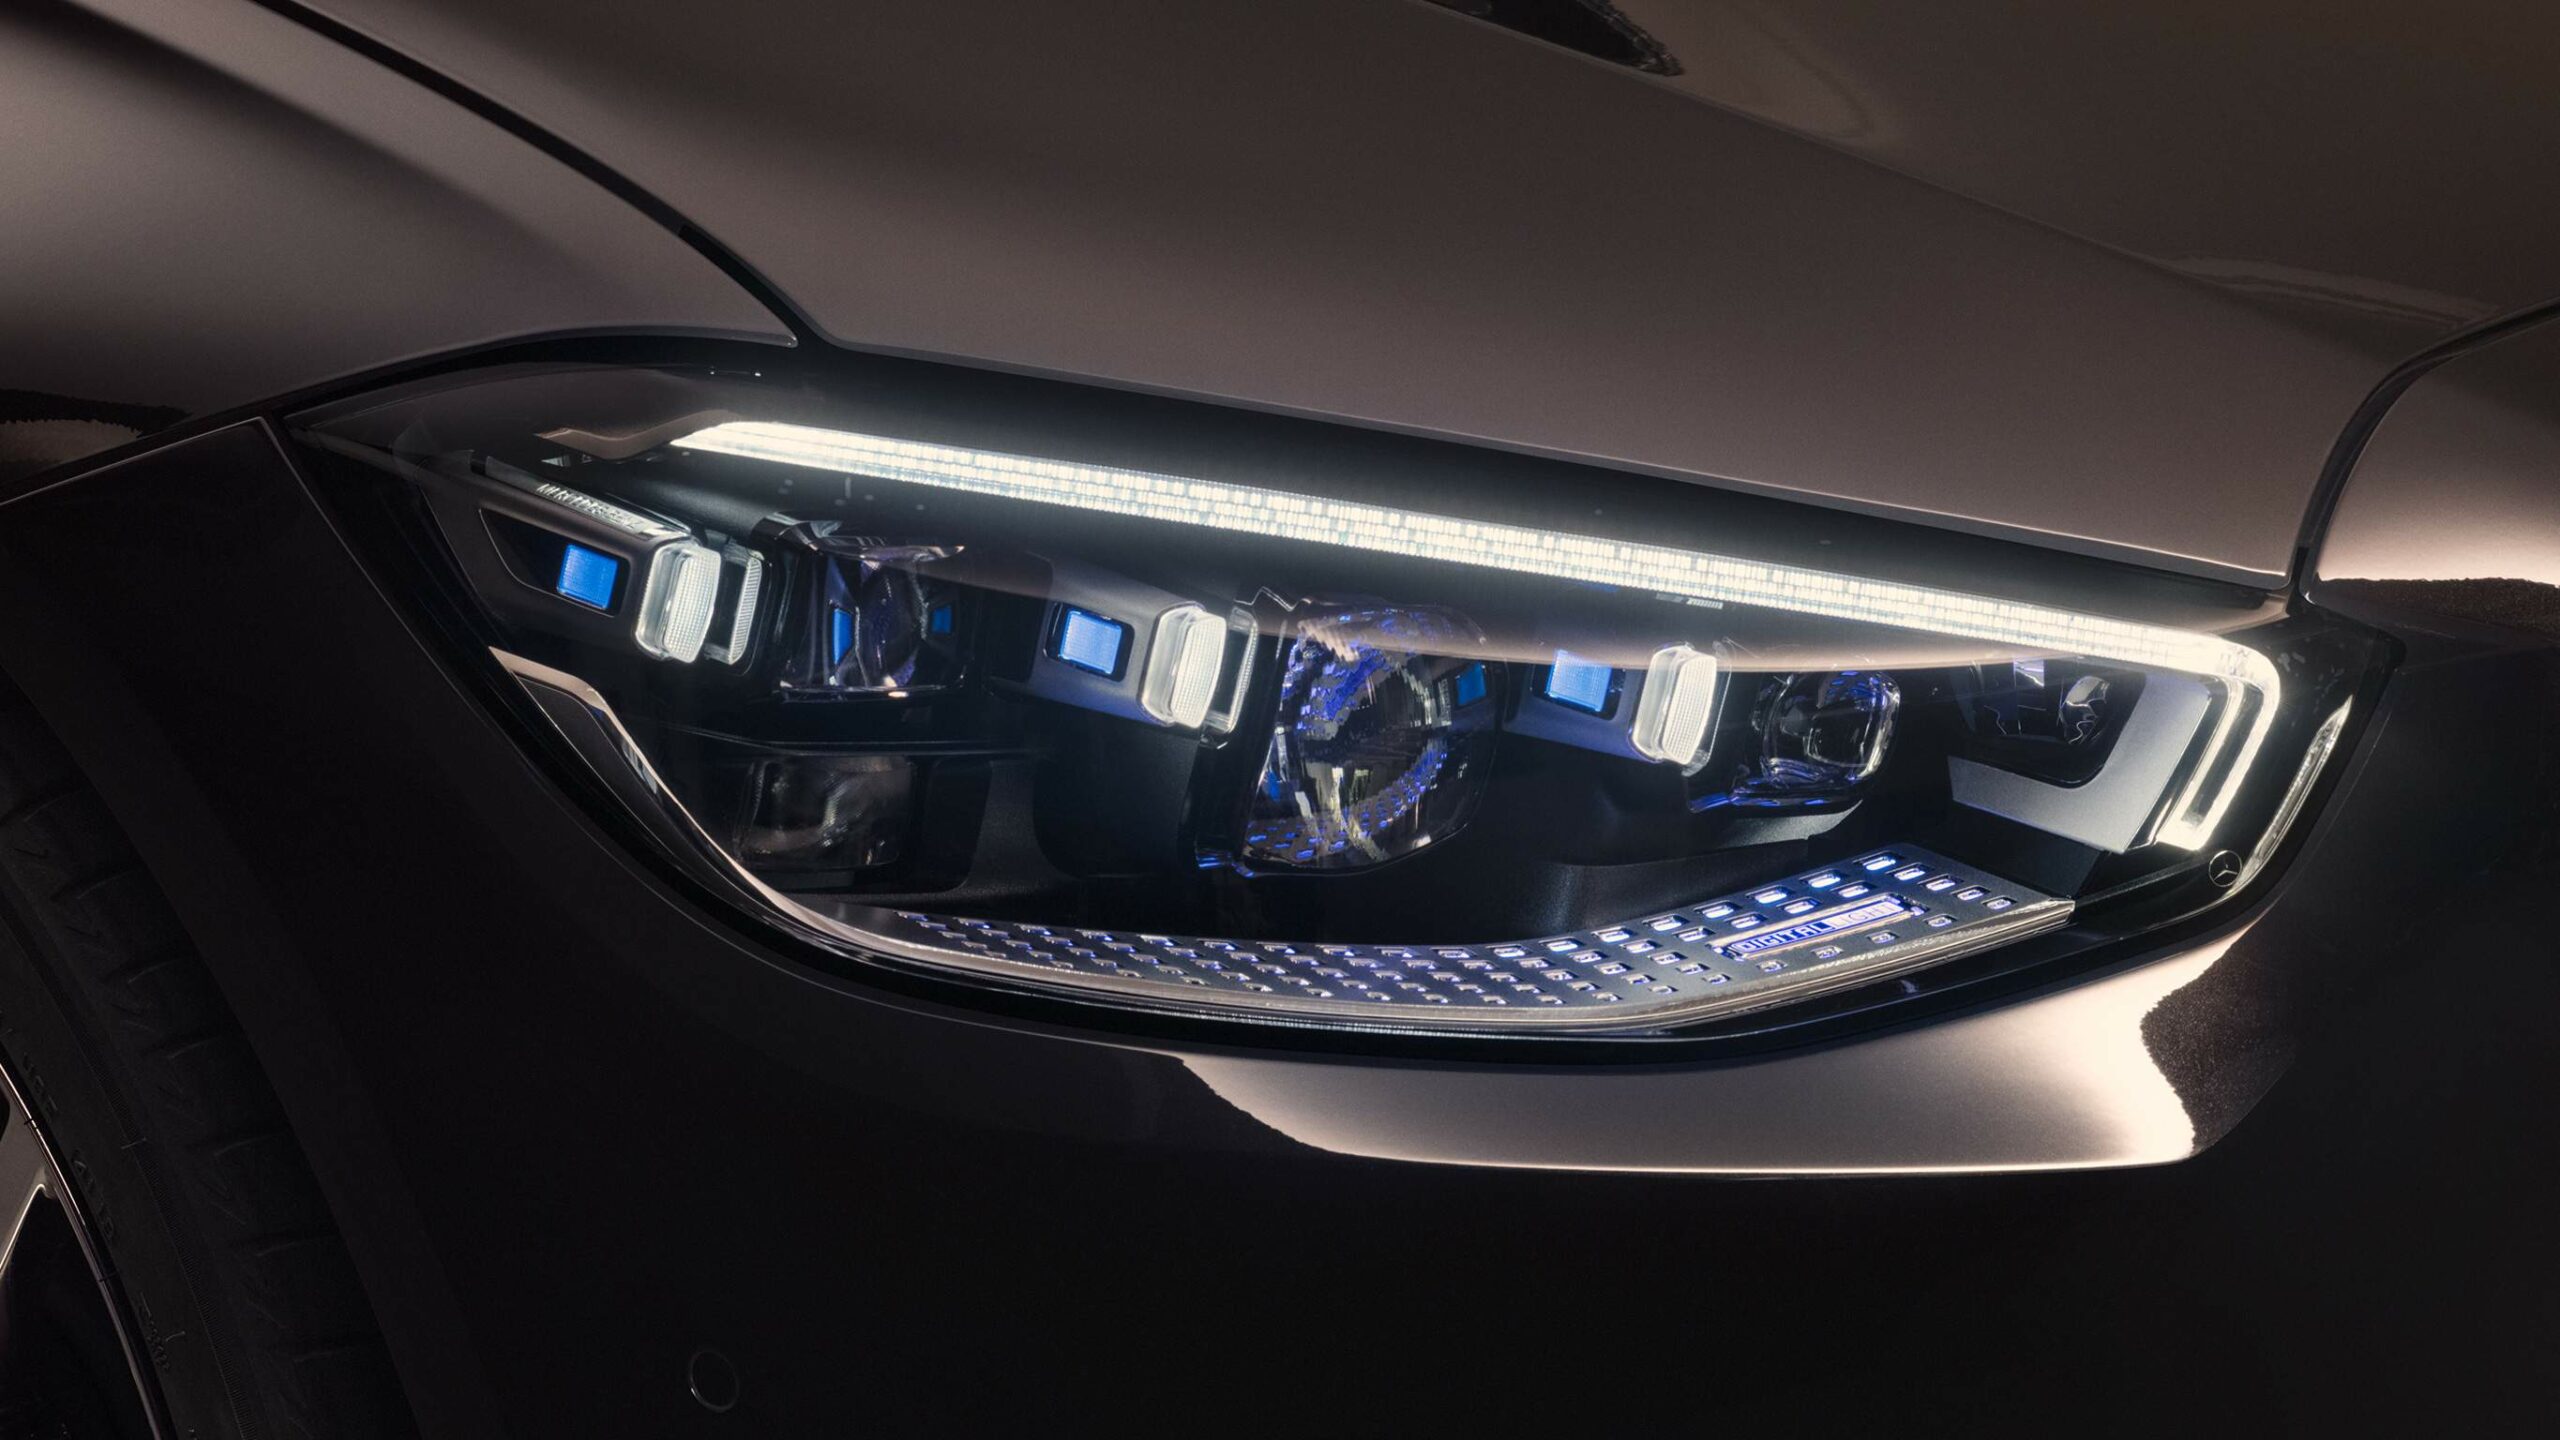 Diseño de los faros frontales con luces LED de la Clase S Sedan de Mercedes-Benz